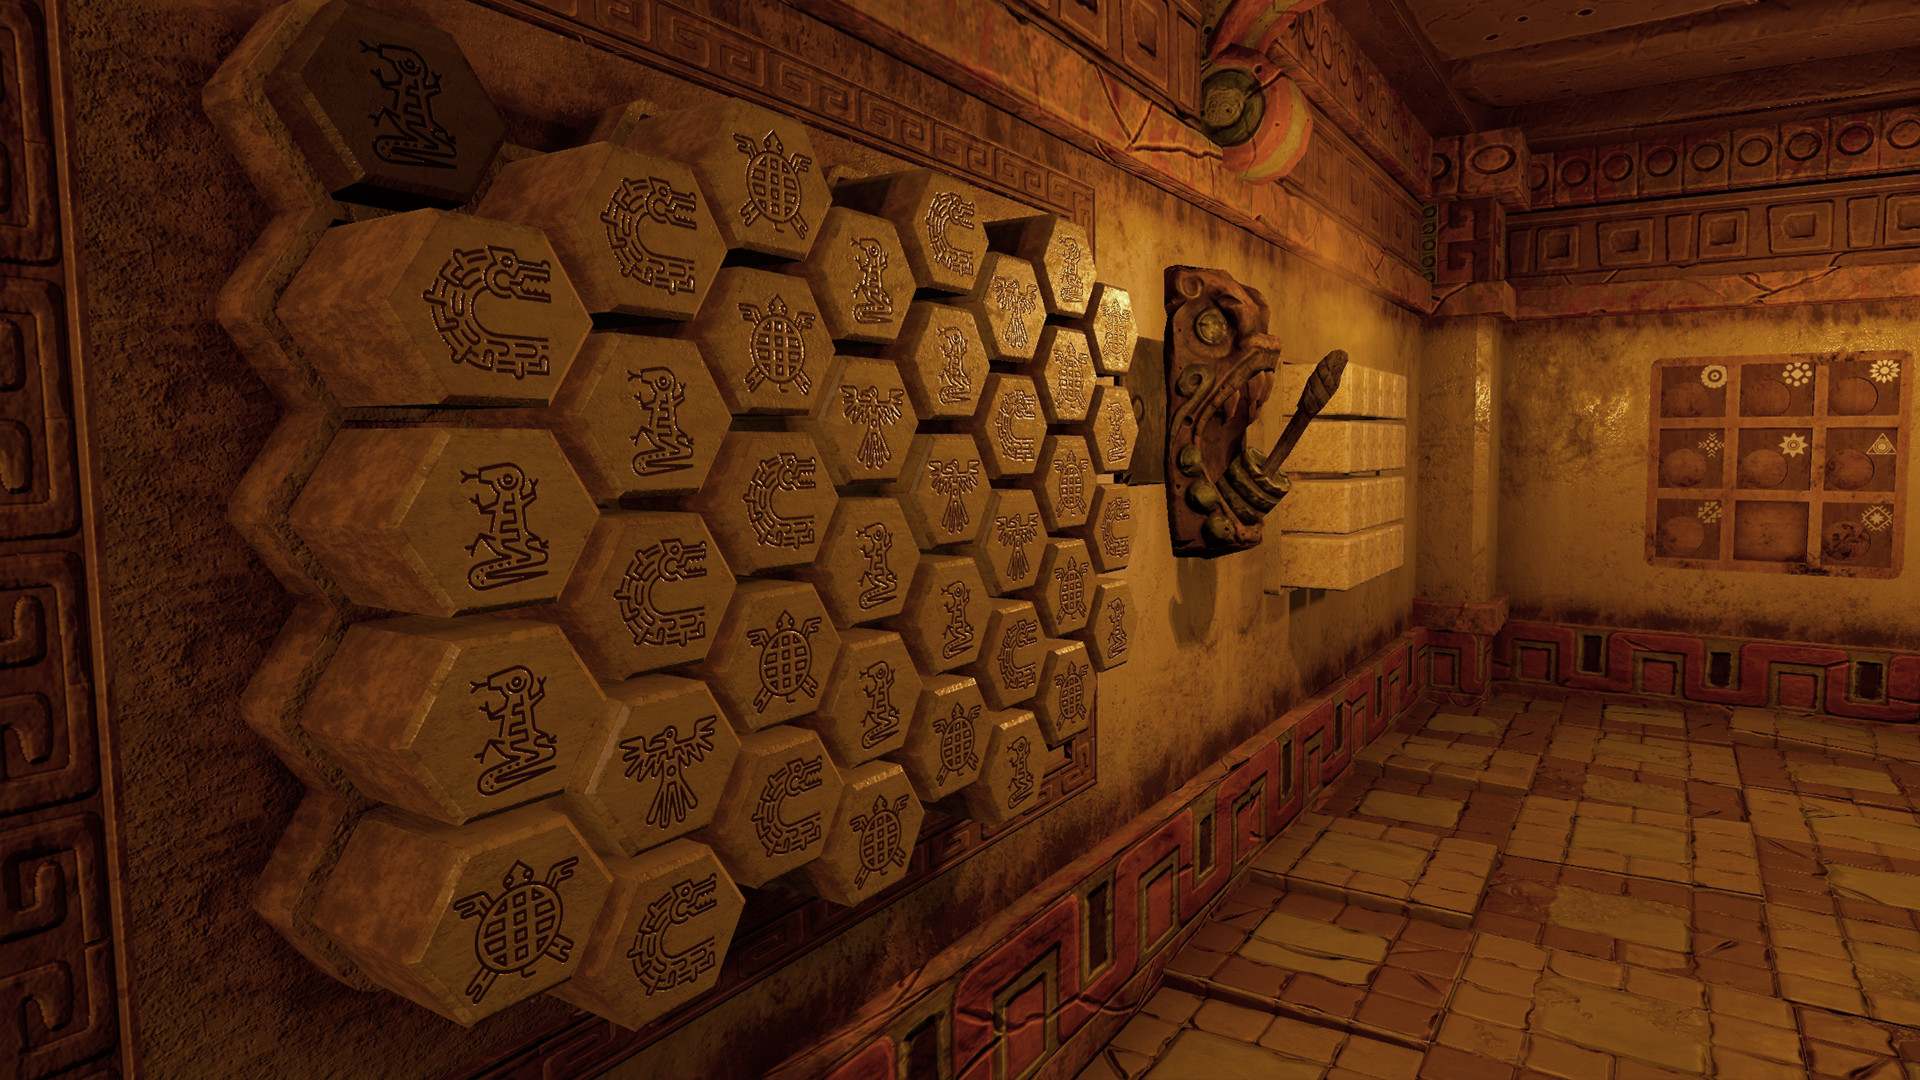 Steam Franchise: mc2games Escape Rooms